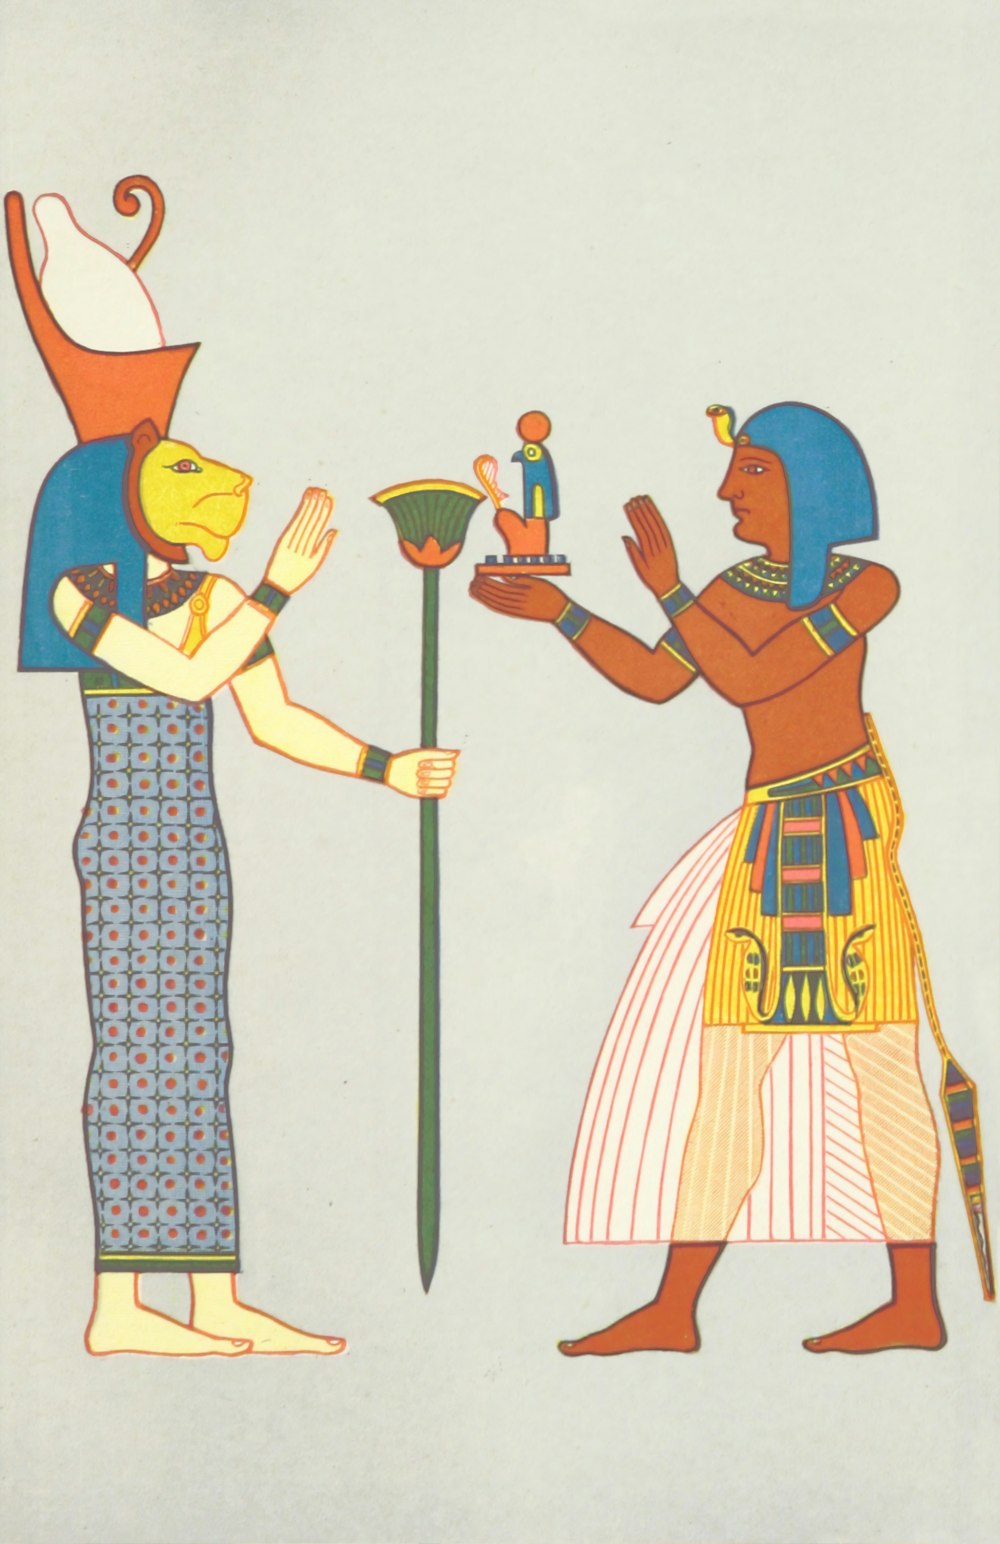 Eine ägyptische Szene mit einem Mann, der einer Frau eine Schüssel anbietet